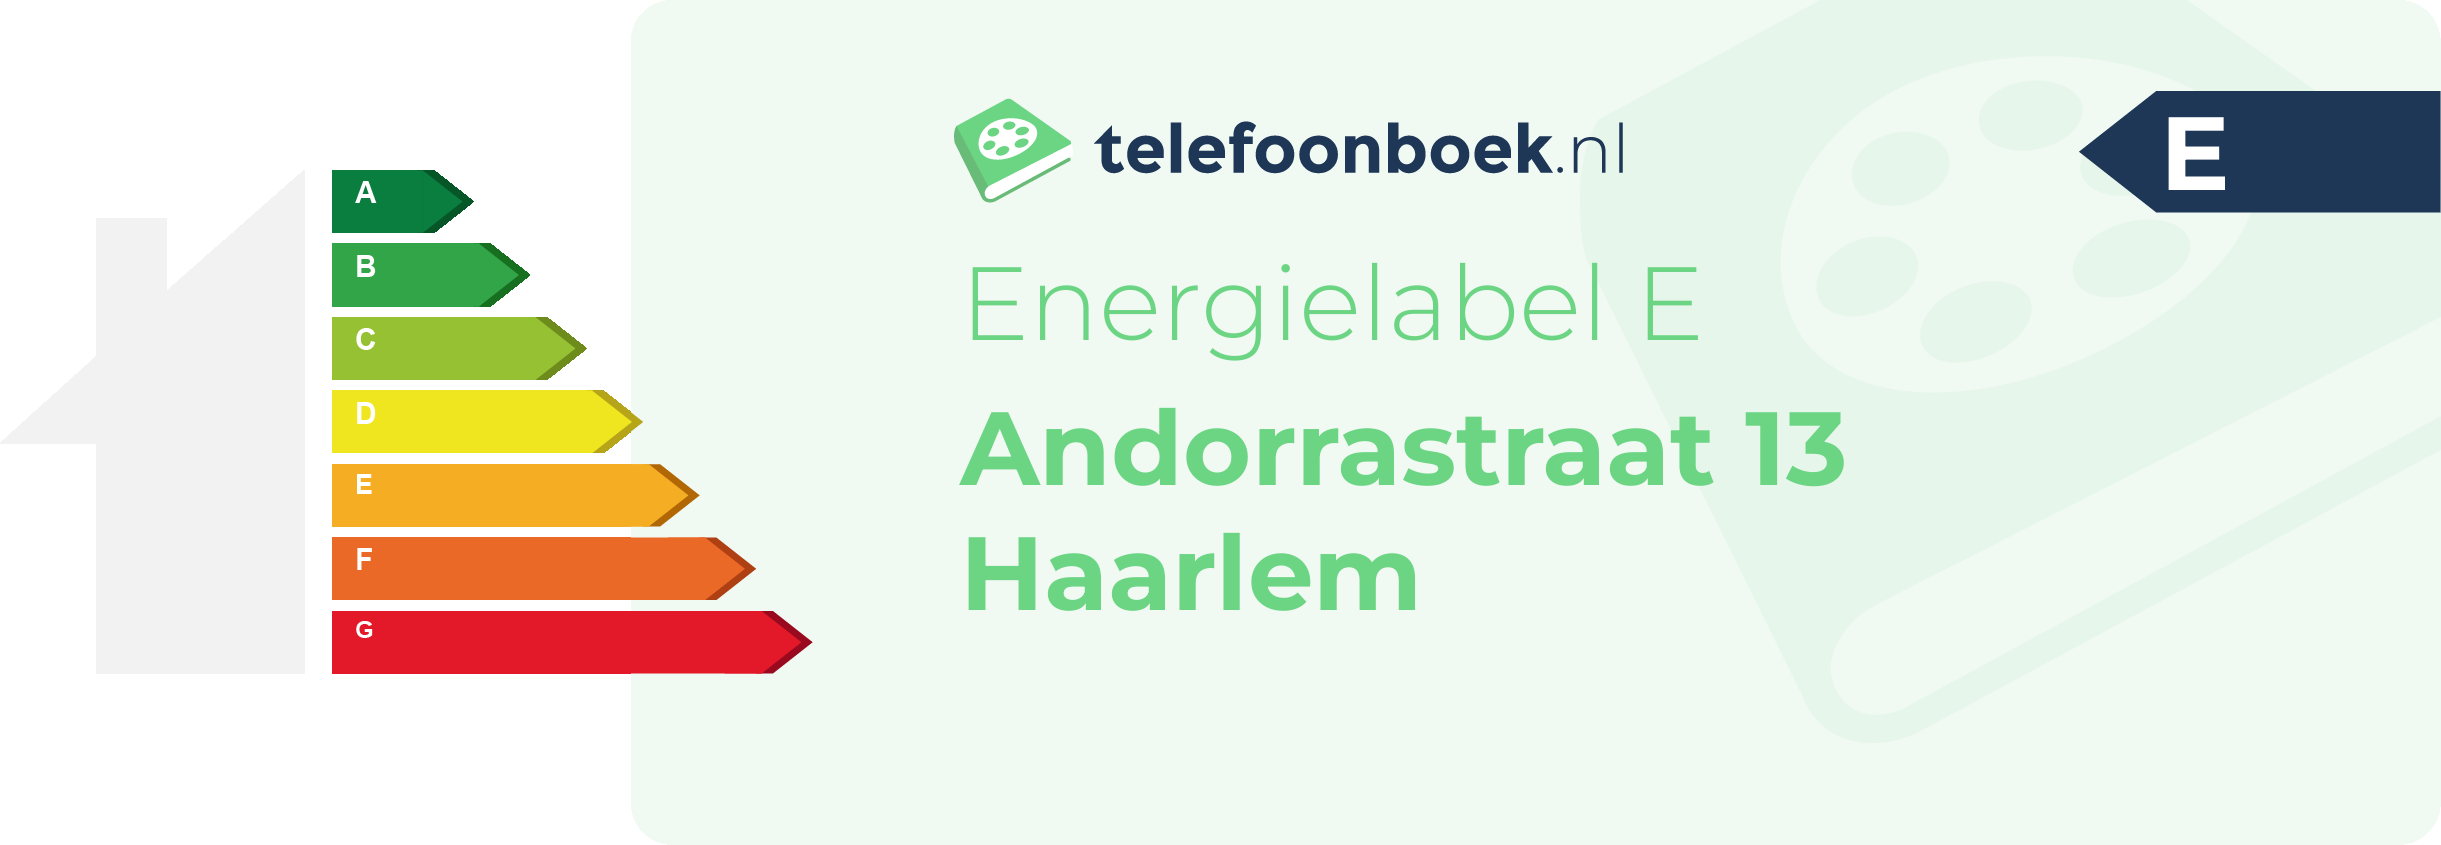 Energielabel Andorrastraat 13 Haarlem